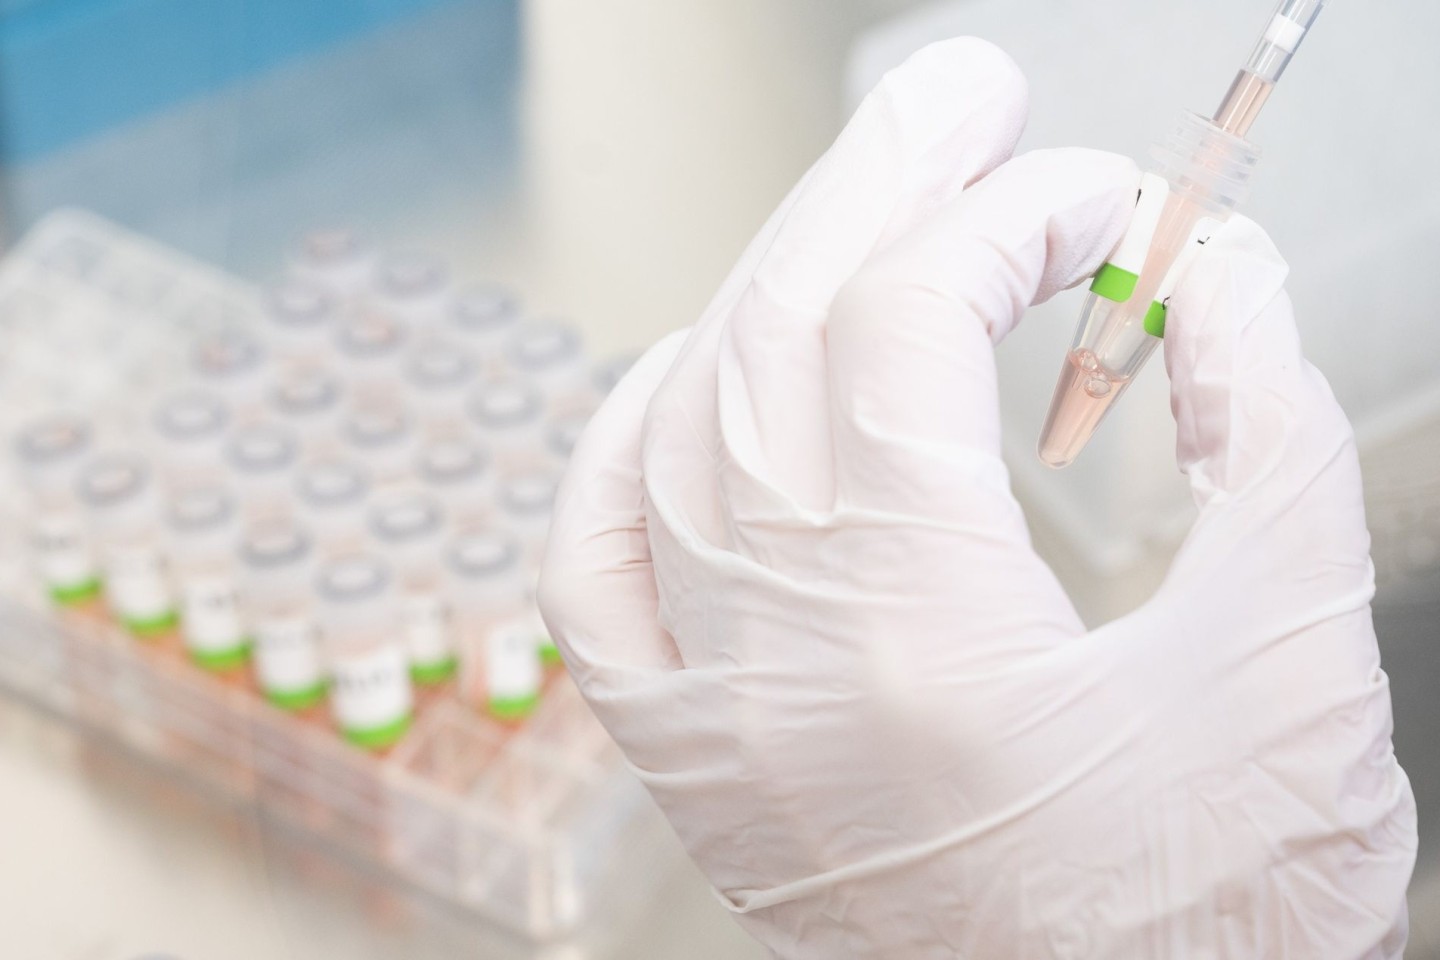 Eine biologisch-technische Assistentin bereitet PCR-Tests auf das Coronavirus im Niedersächsischen Landesgesundheitsamt für die Analyse vor.